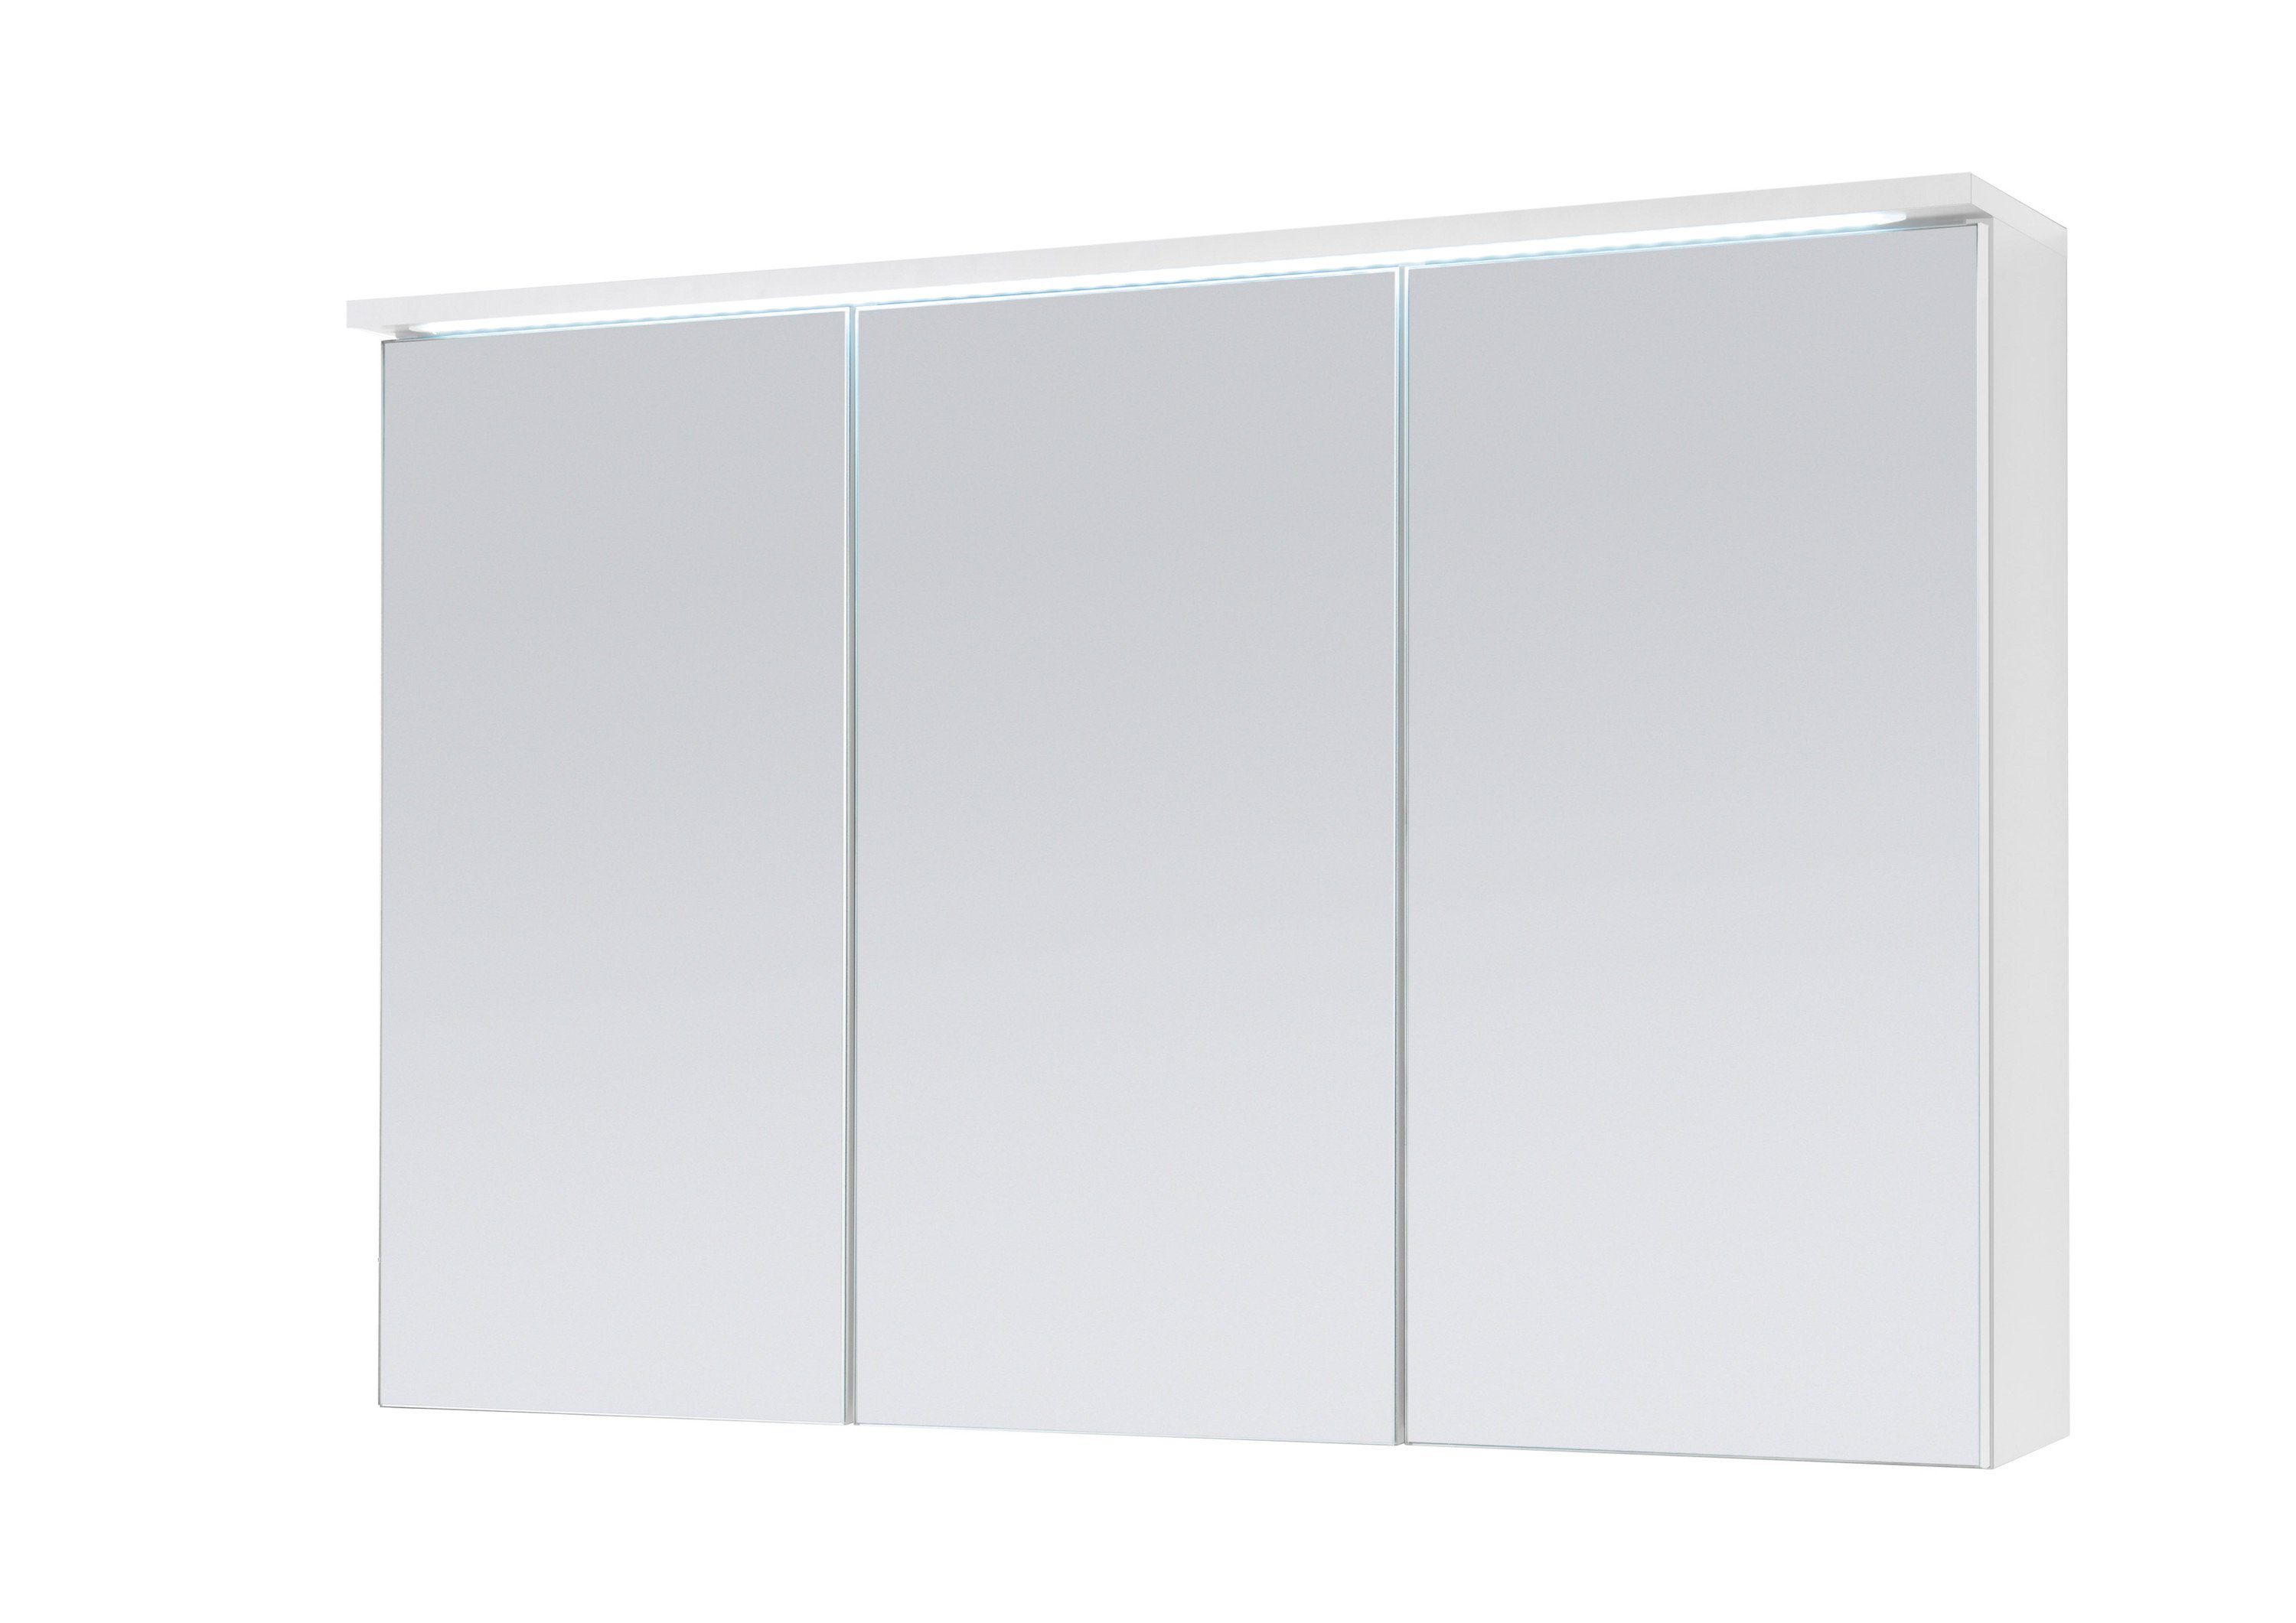 DUO Aileenstore Spiegelschrank cm, LED-Beleuchtung 100 Schalter-/Steckdosenbox, Breite